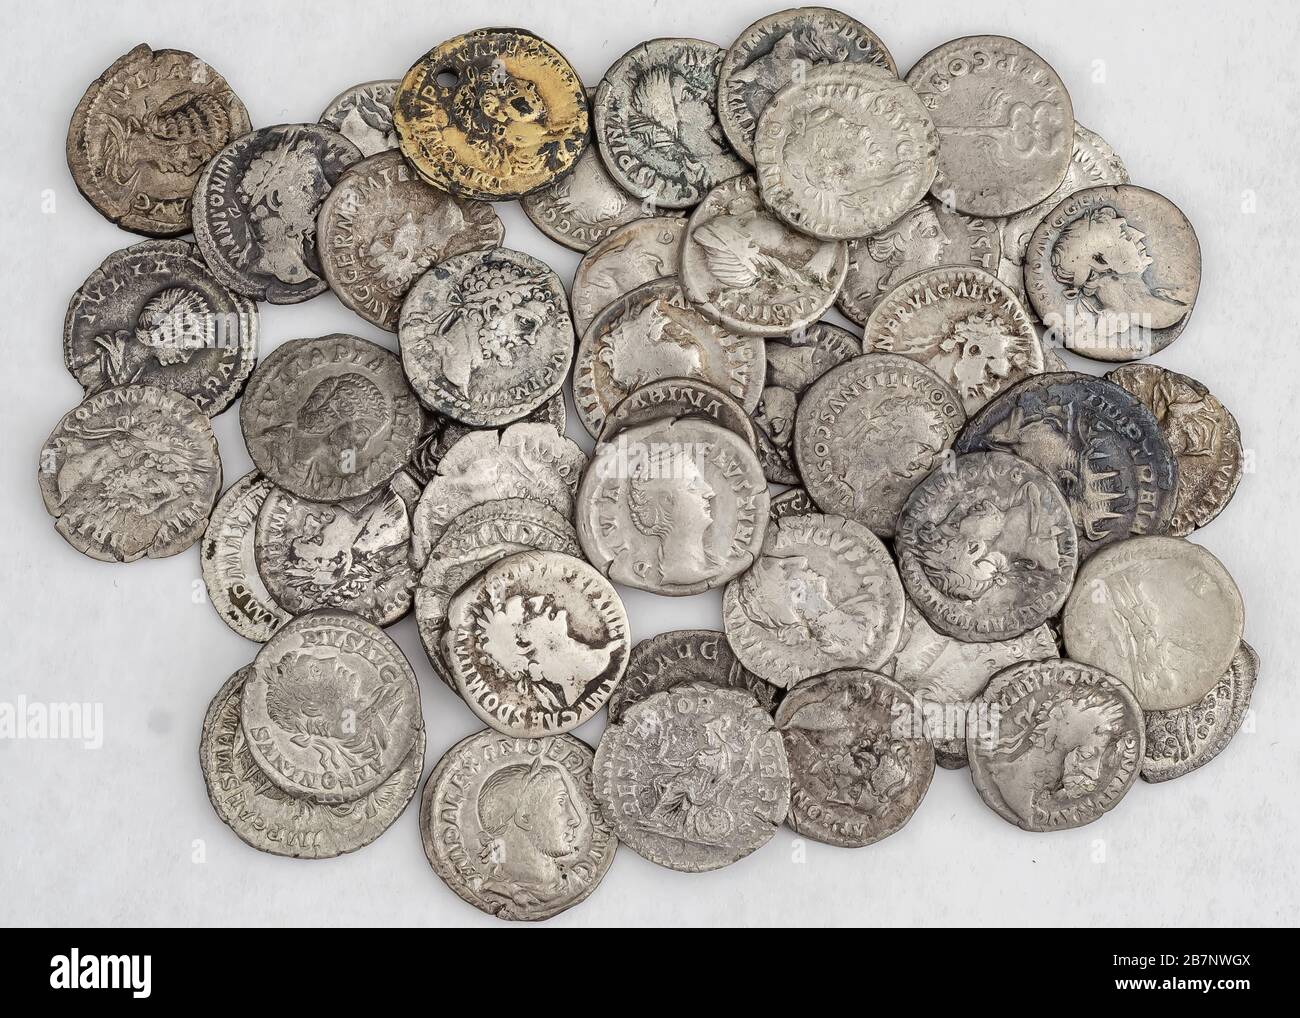 Antike römische Münzen, kleiner Geldhaufen auf weißem Hintergrund  Stockfotografie - Alamy